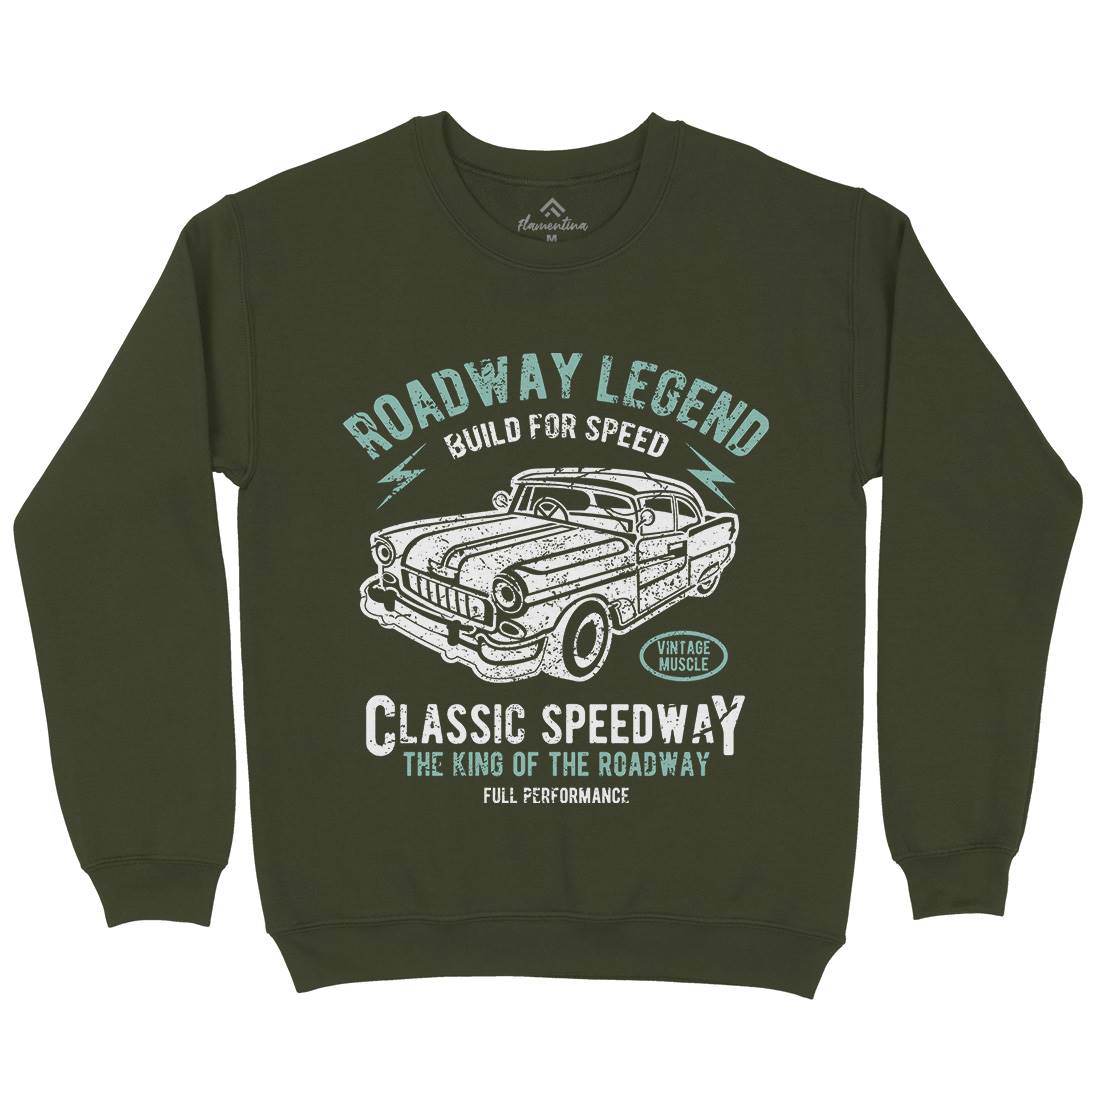 Roadway Legend Mens Crew Neck Sweatshirt Cars A124